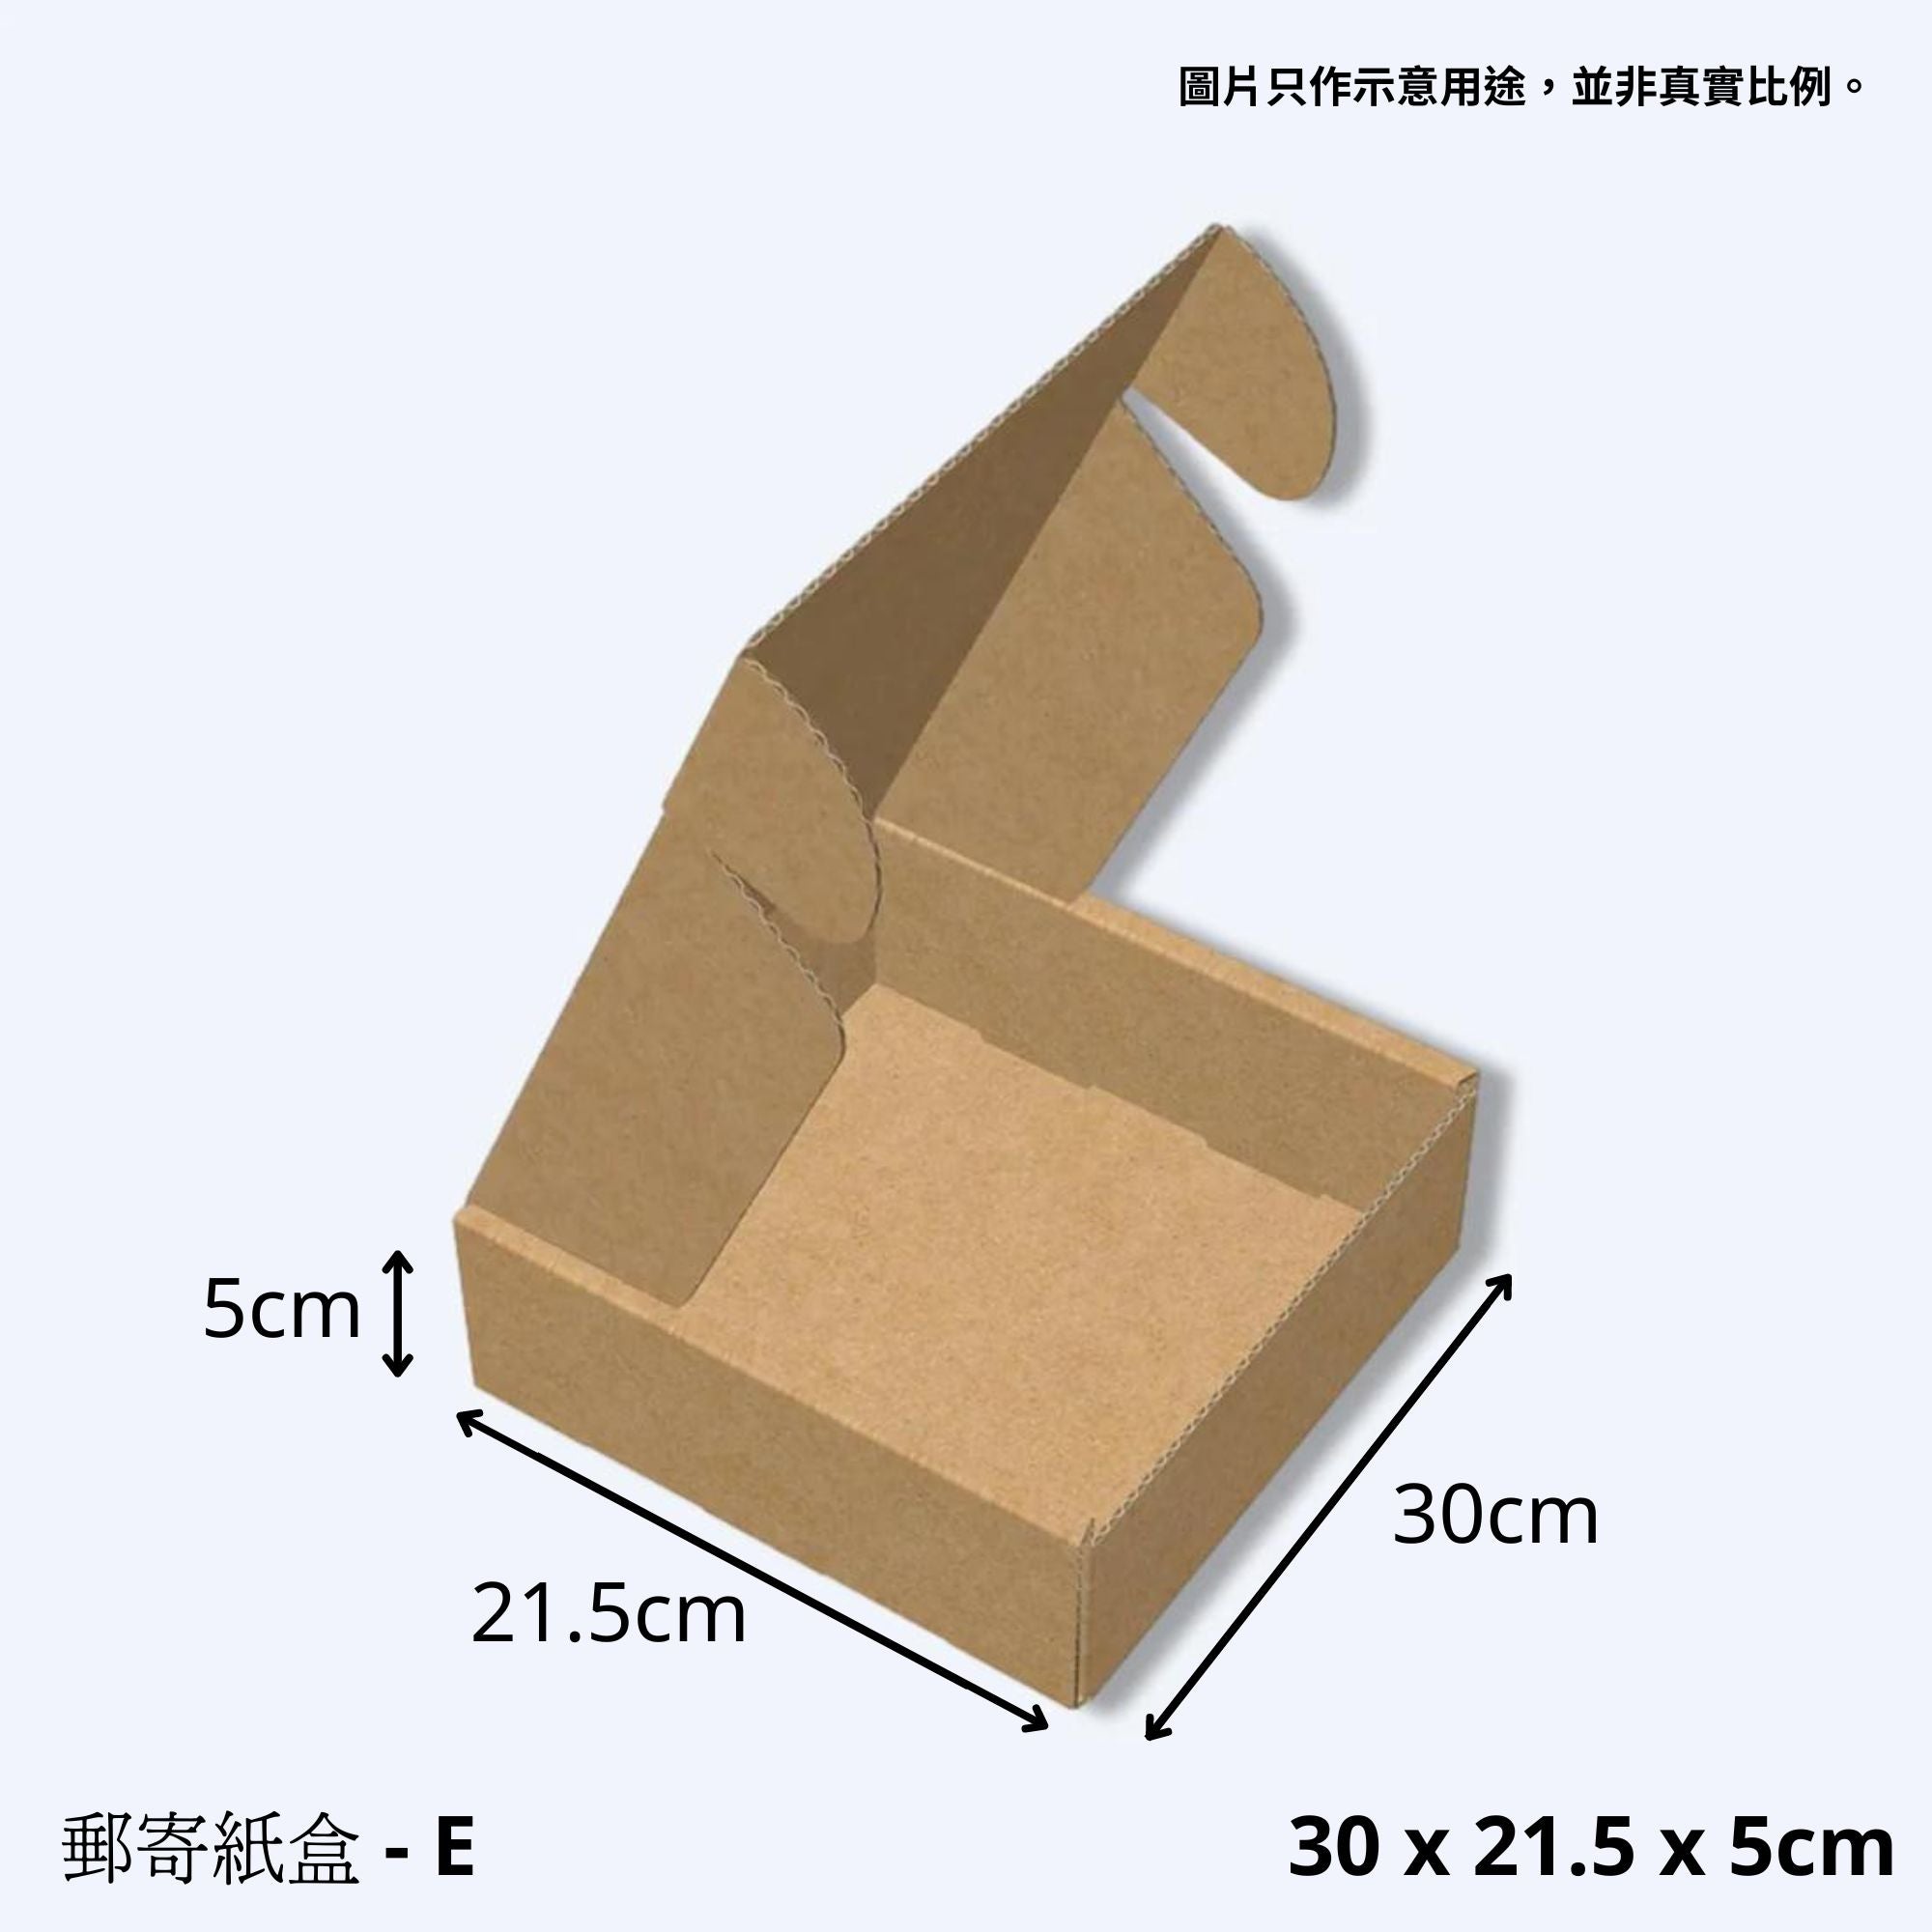 展開的紙盒在均勻的灰色背景上，尺寸標注為30 x 21.5 x 5公分，顯示出紙盒作為一個飛機盒的寬敞內部，適合於運送大小不一的物品。